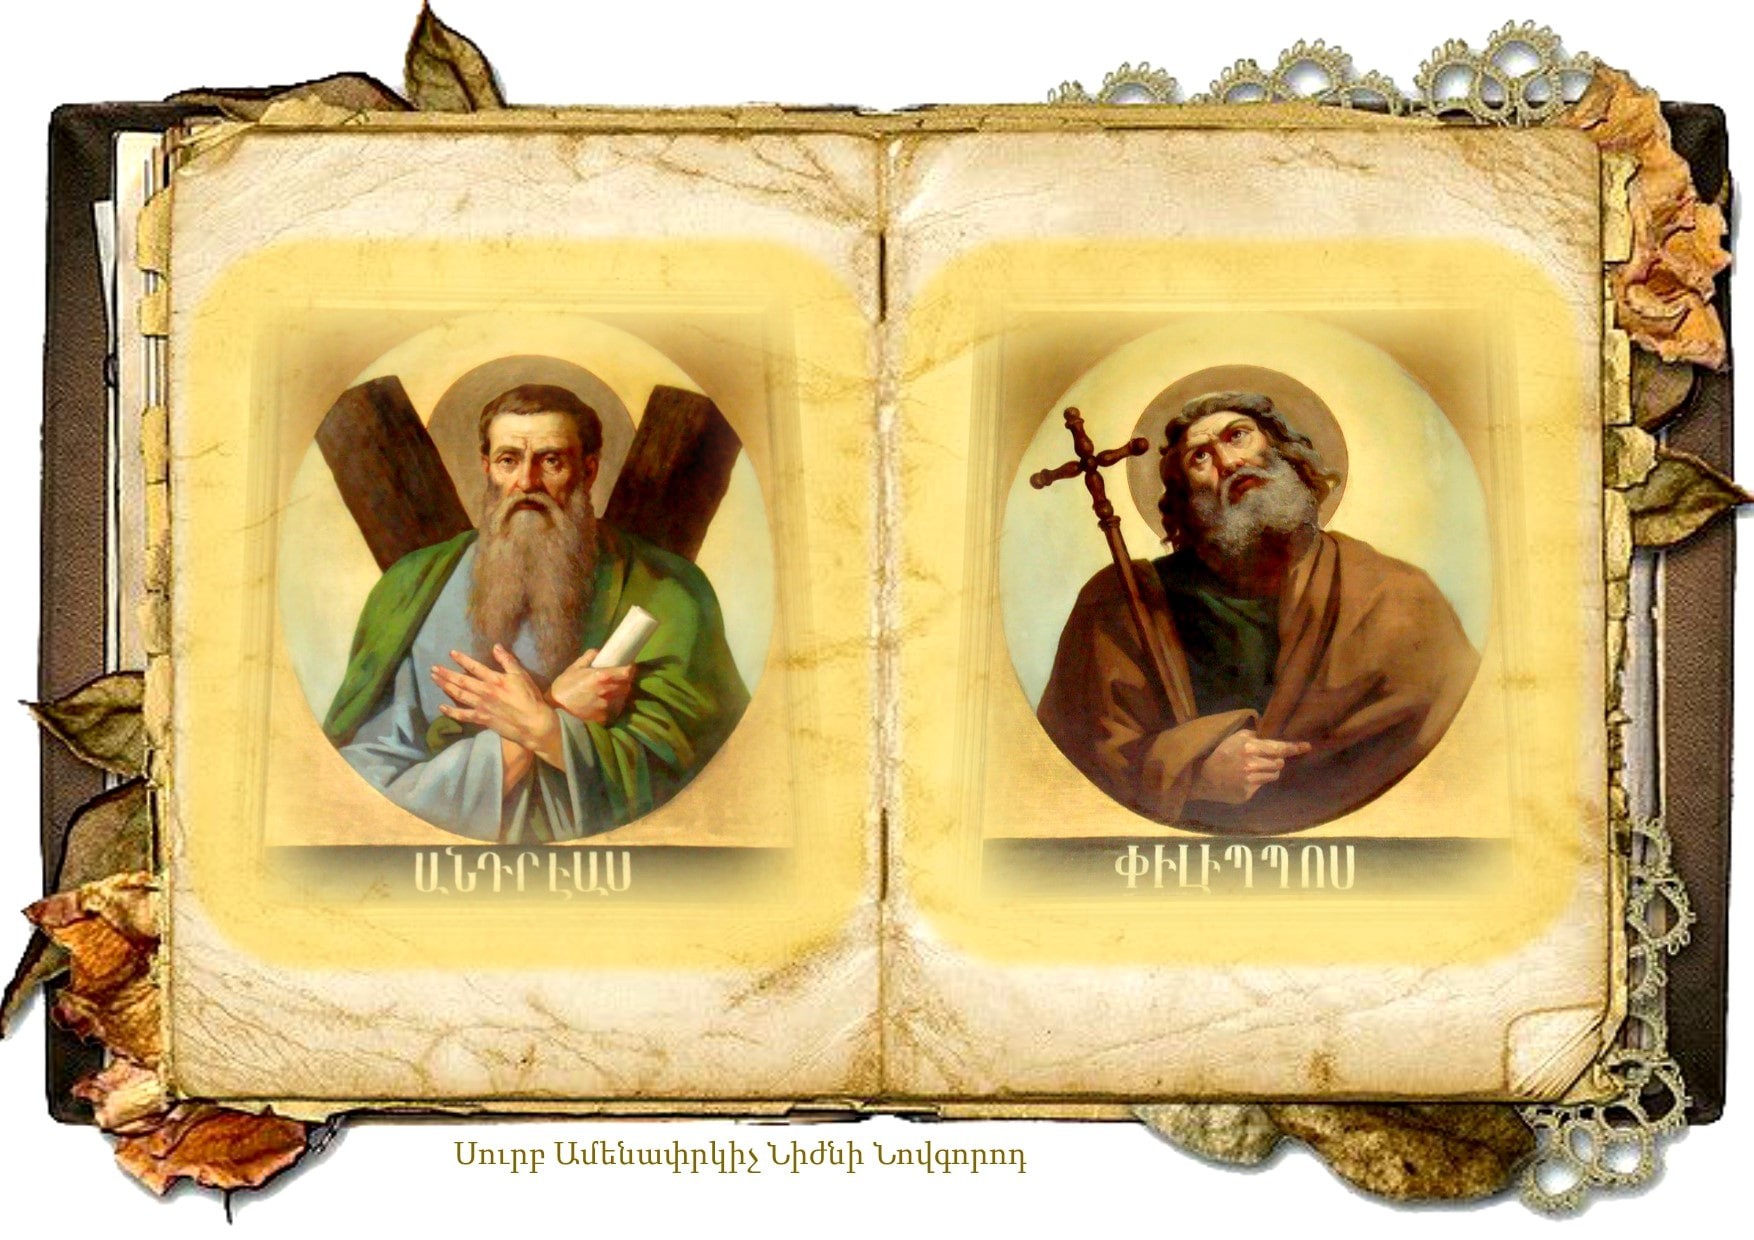 Սուրբ Անդրեաս և Սուրբ Փիլիպպոս առաքյալների հիշատակի օր